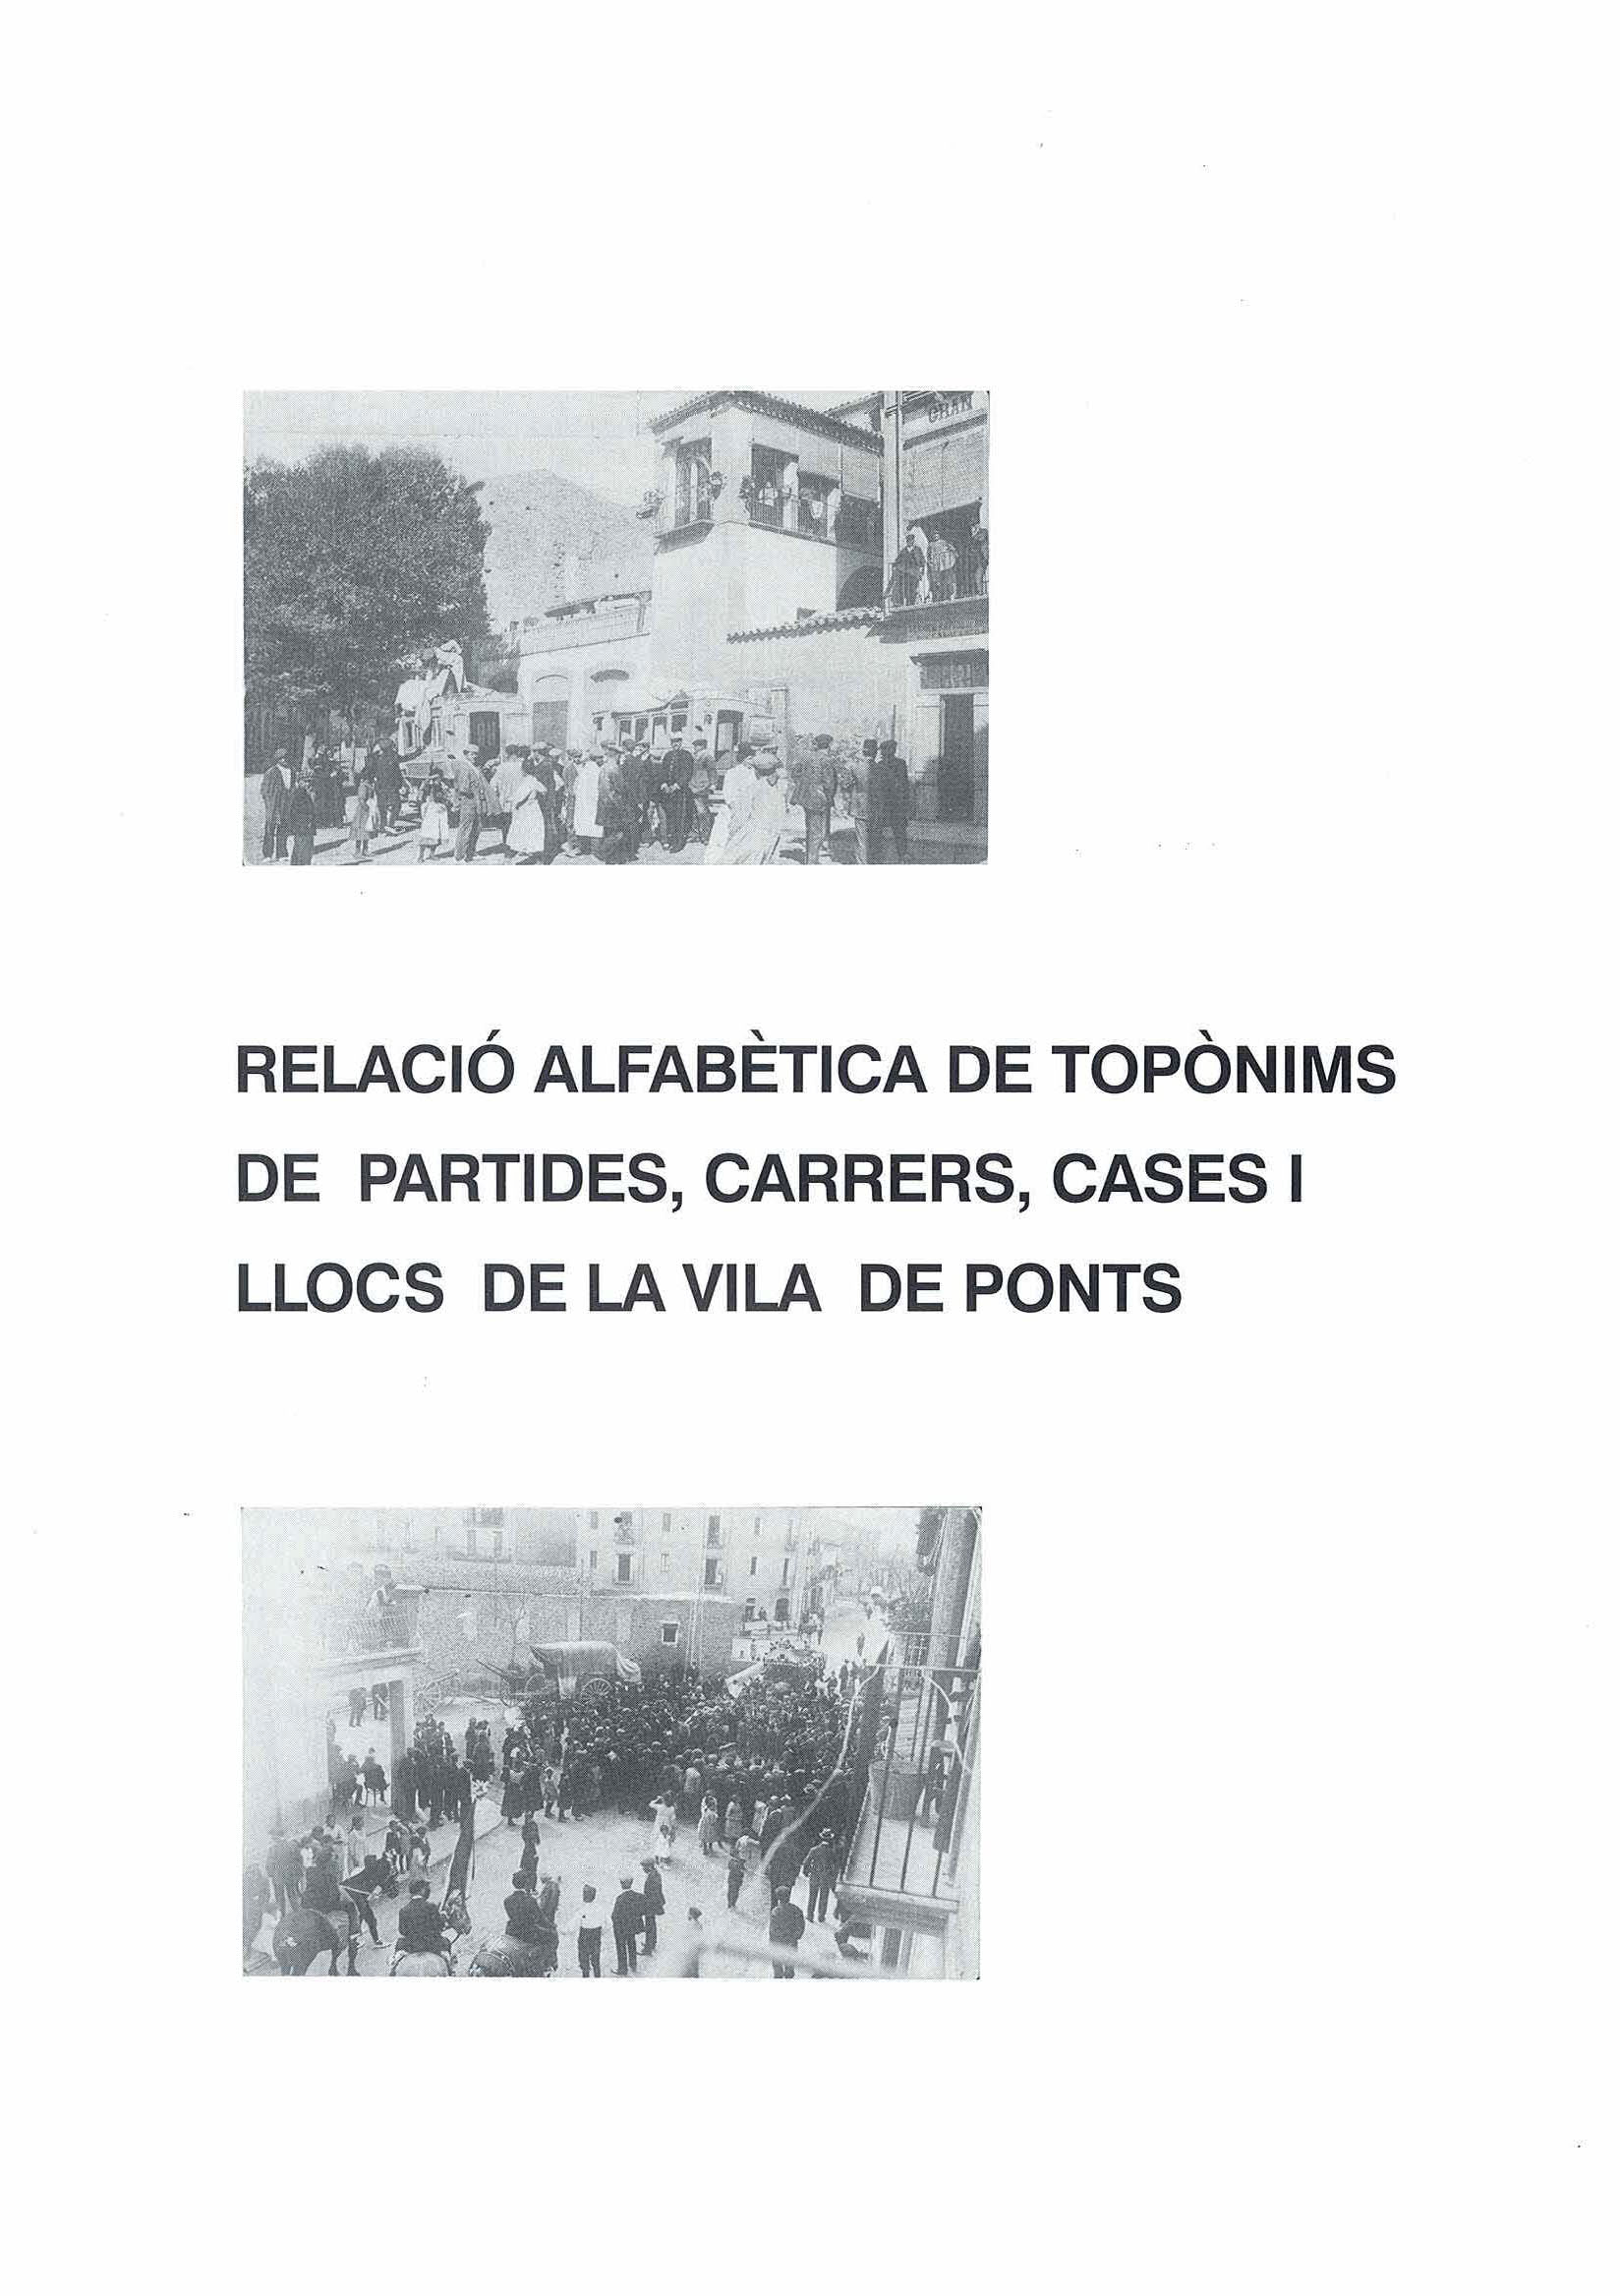 Relació alfabètica de totpònims de partides, carrers, cases i llocs de la vila de Ponts